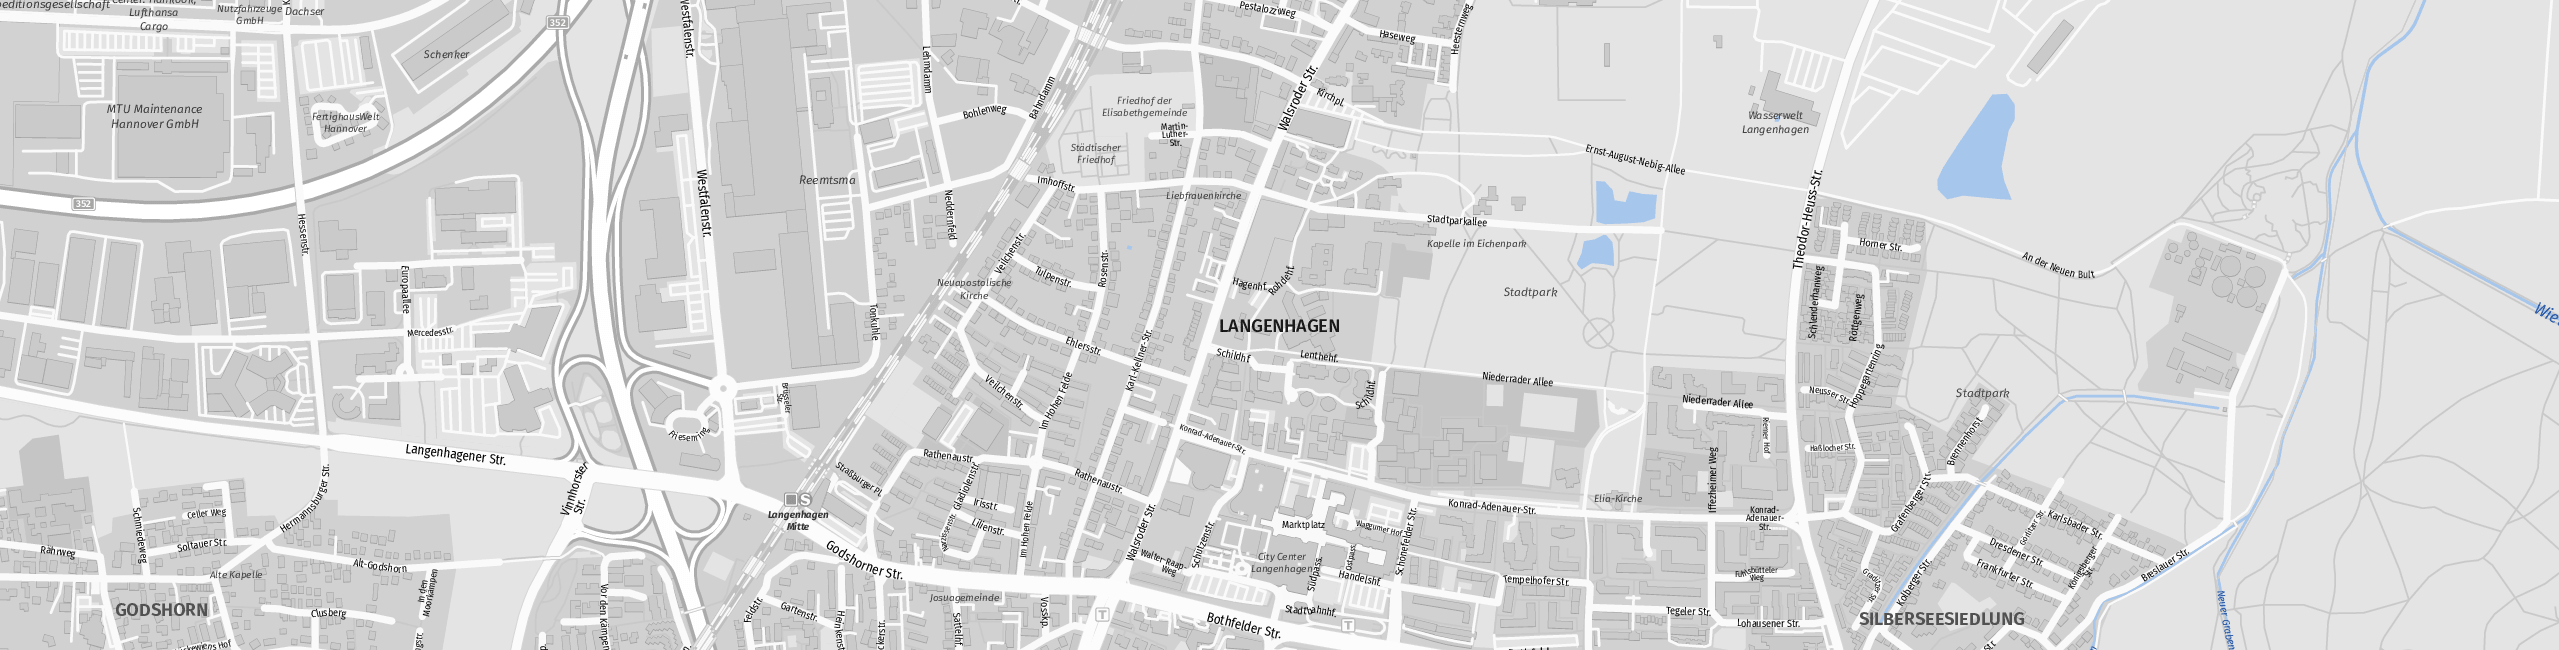 Stadtplan Langenhagen zum Downloaden.